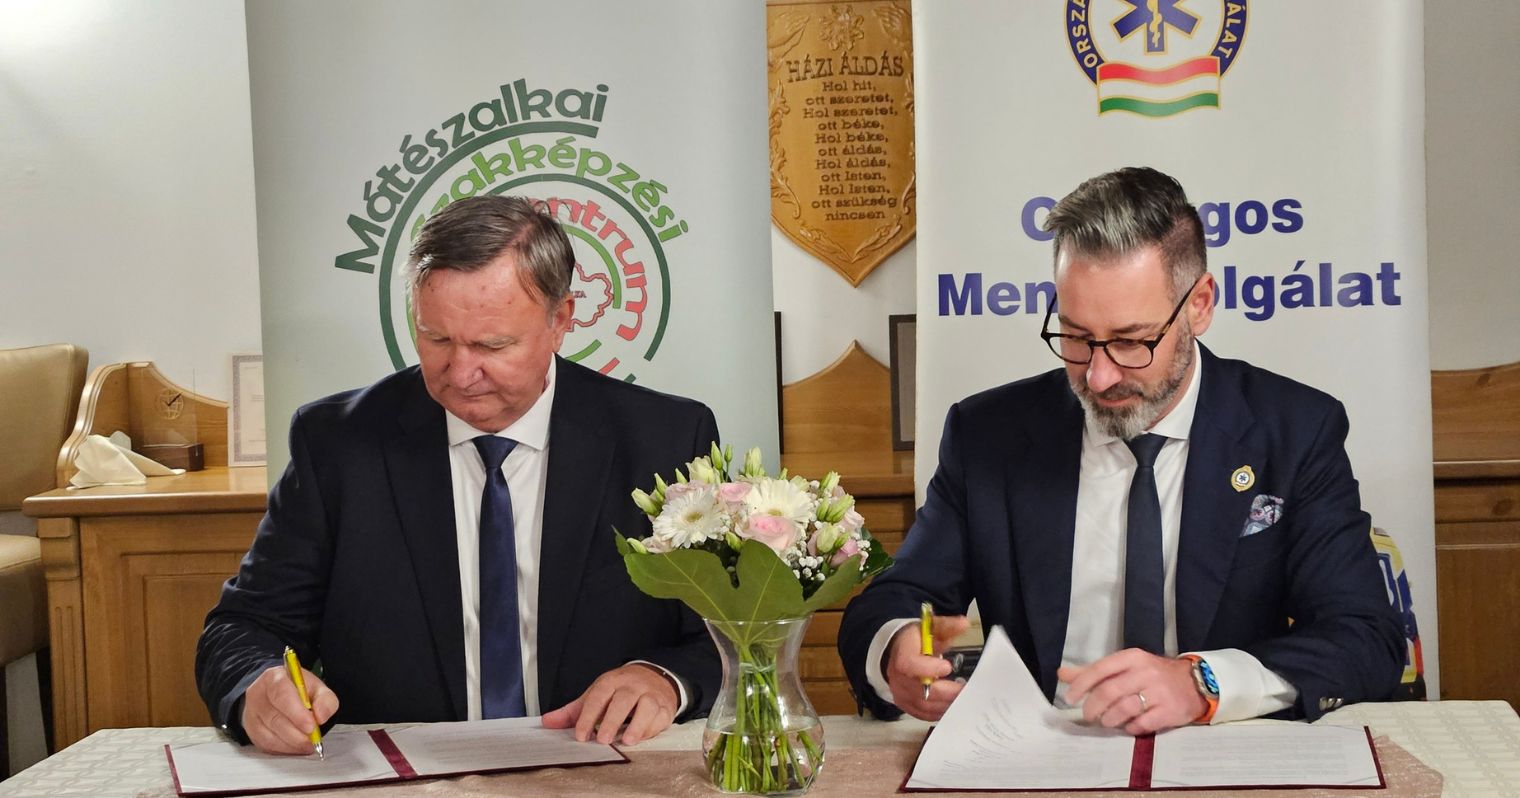 Csató Gábor, az OMSZ főigazgatója és Rostás János Tibor, a Mátészalkai Szakképzési Centrum kancellárja aláírják az együttműködést a két intézmény bannerei előtt egy asztalnál.